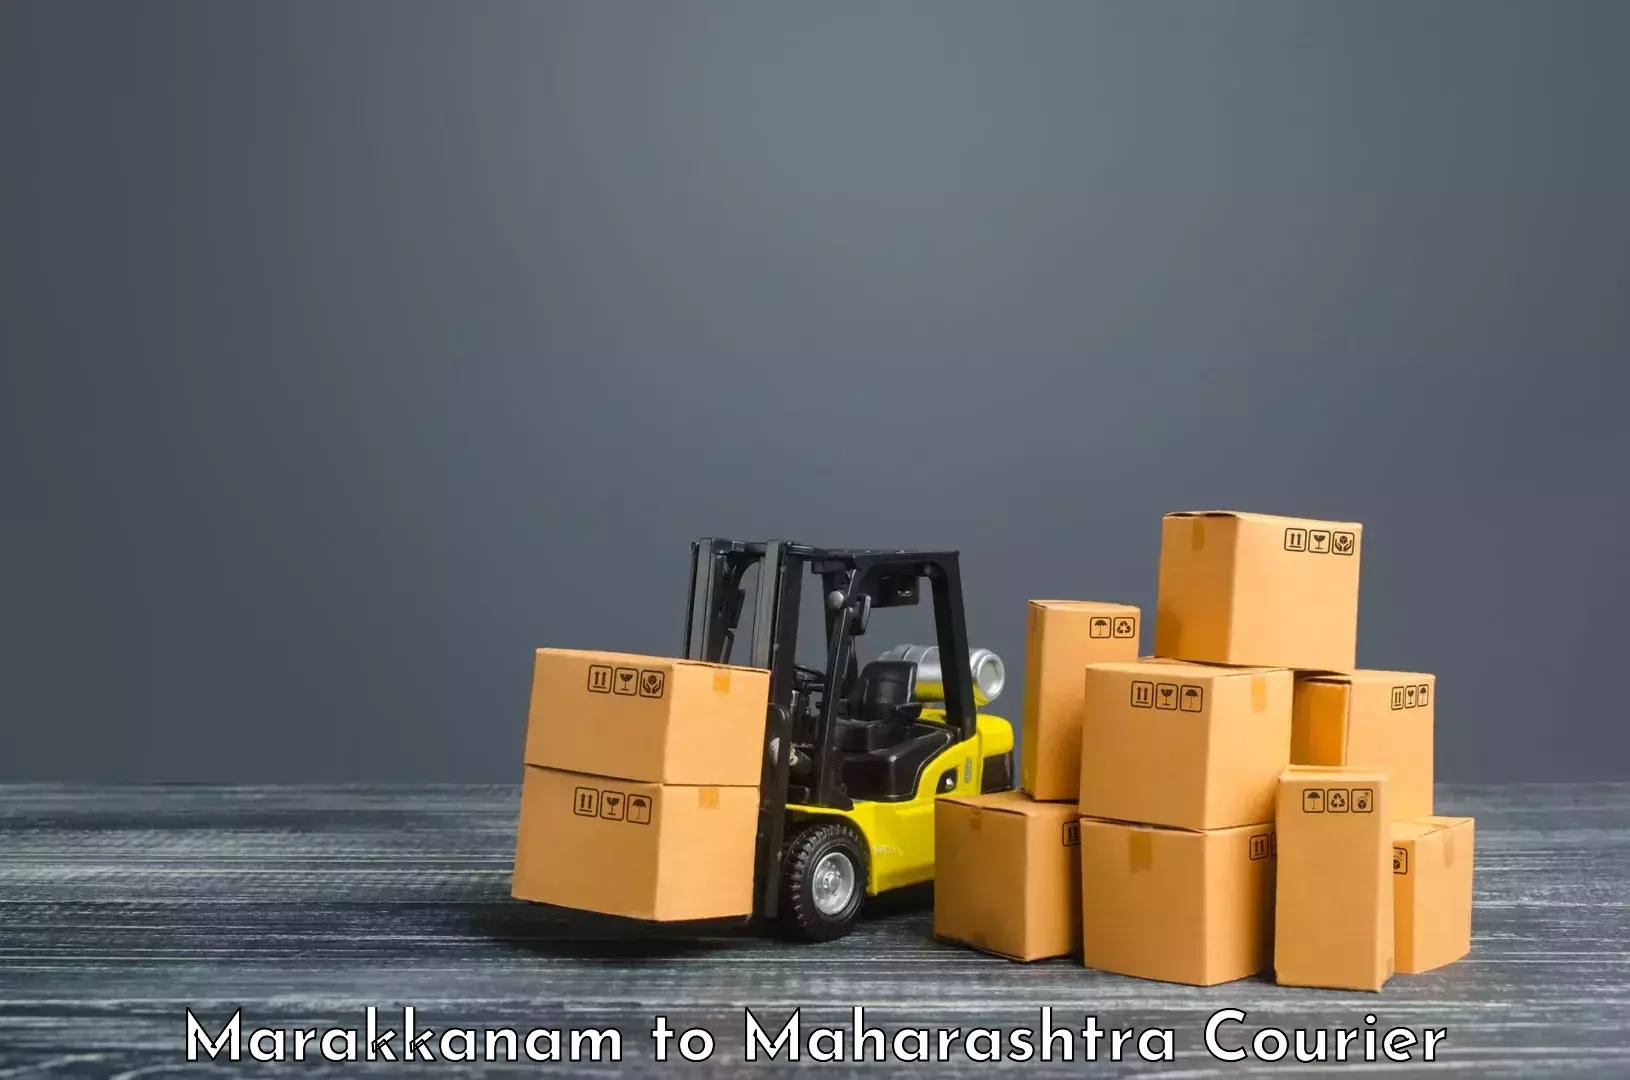 Courier service innovation Marakkanam to Maharashtra